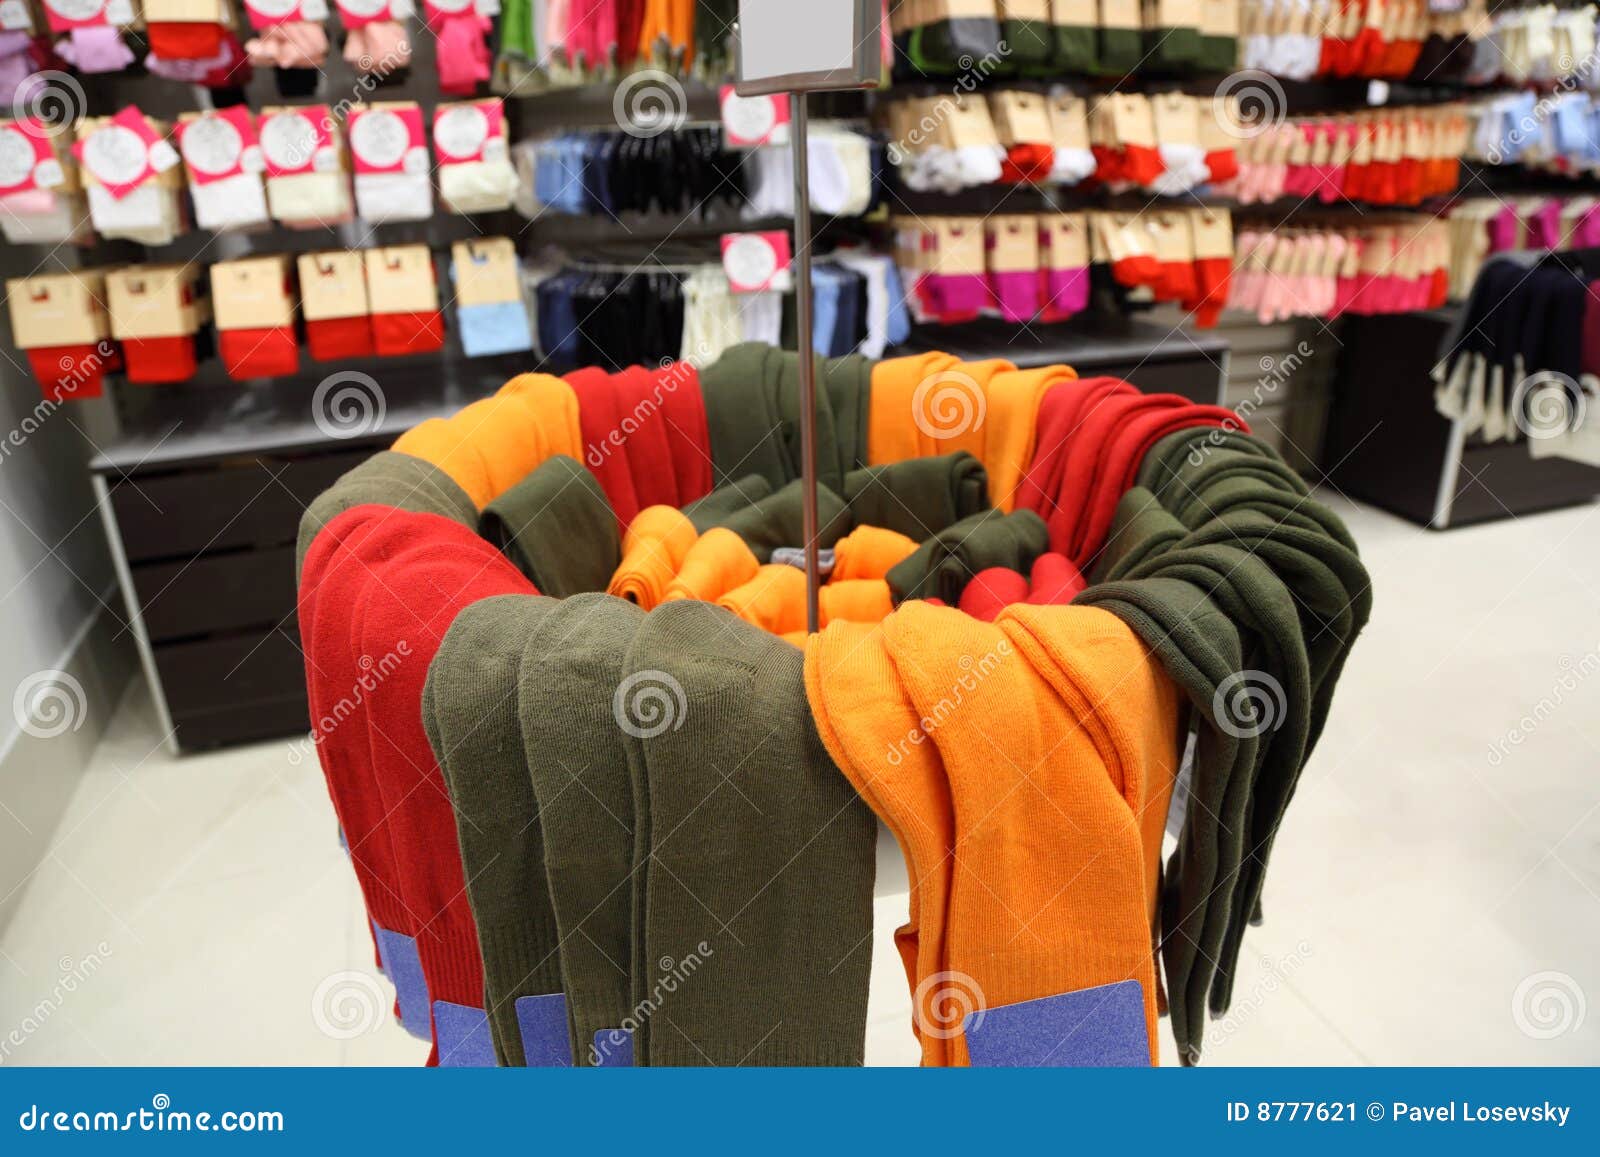 shelves and racks with socks